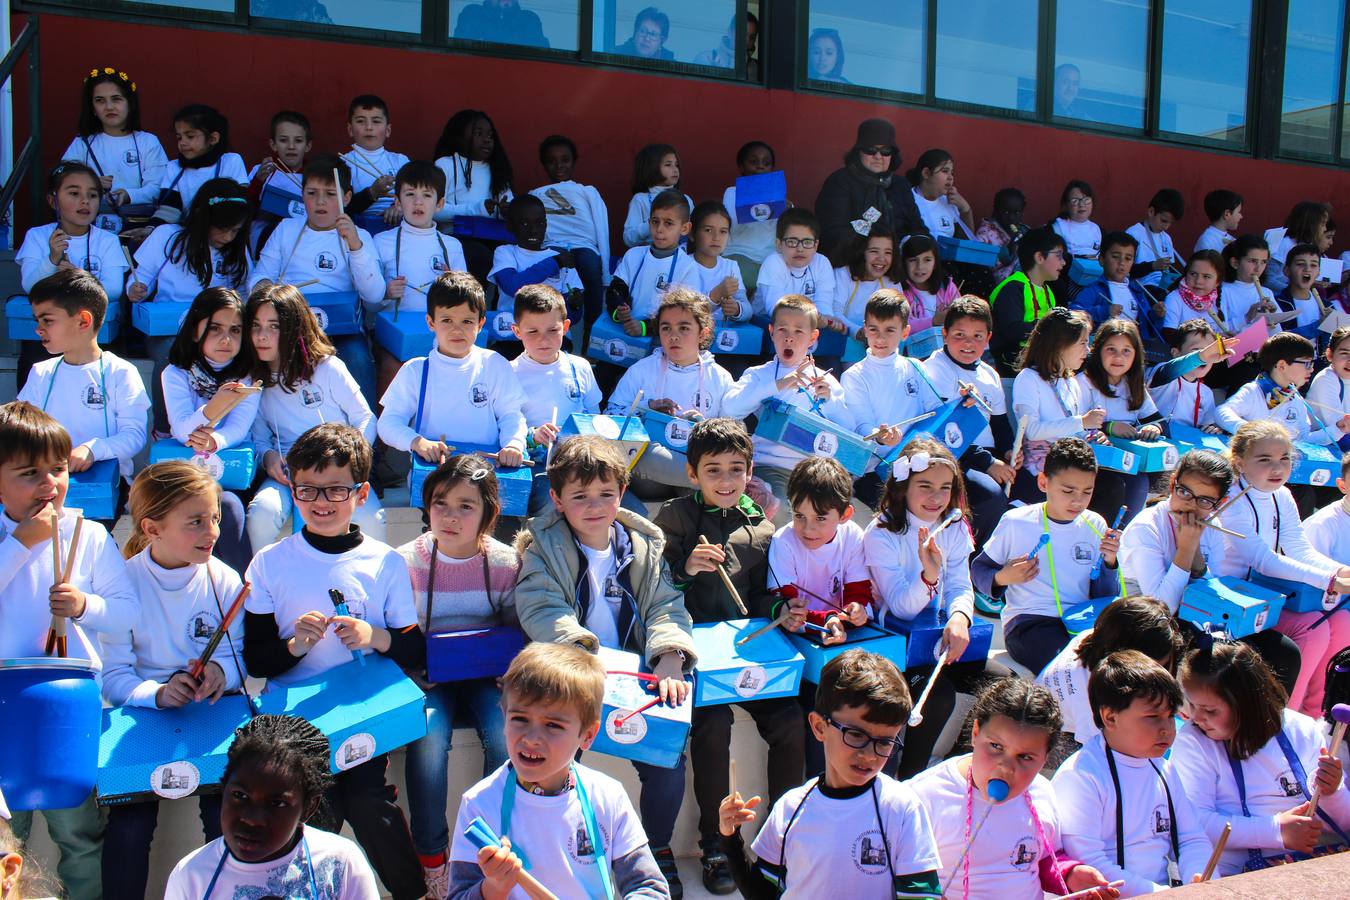 Todos los escolares, desde los más pequeños de 3 años, han participado con sus tambores realizados con la ayuda de sus famililas.